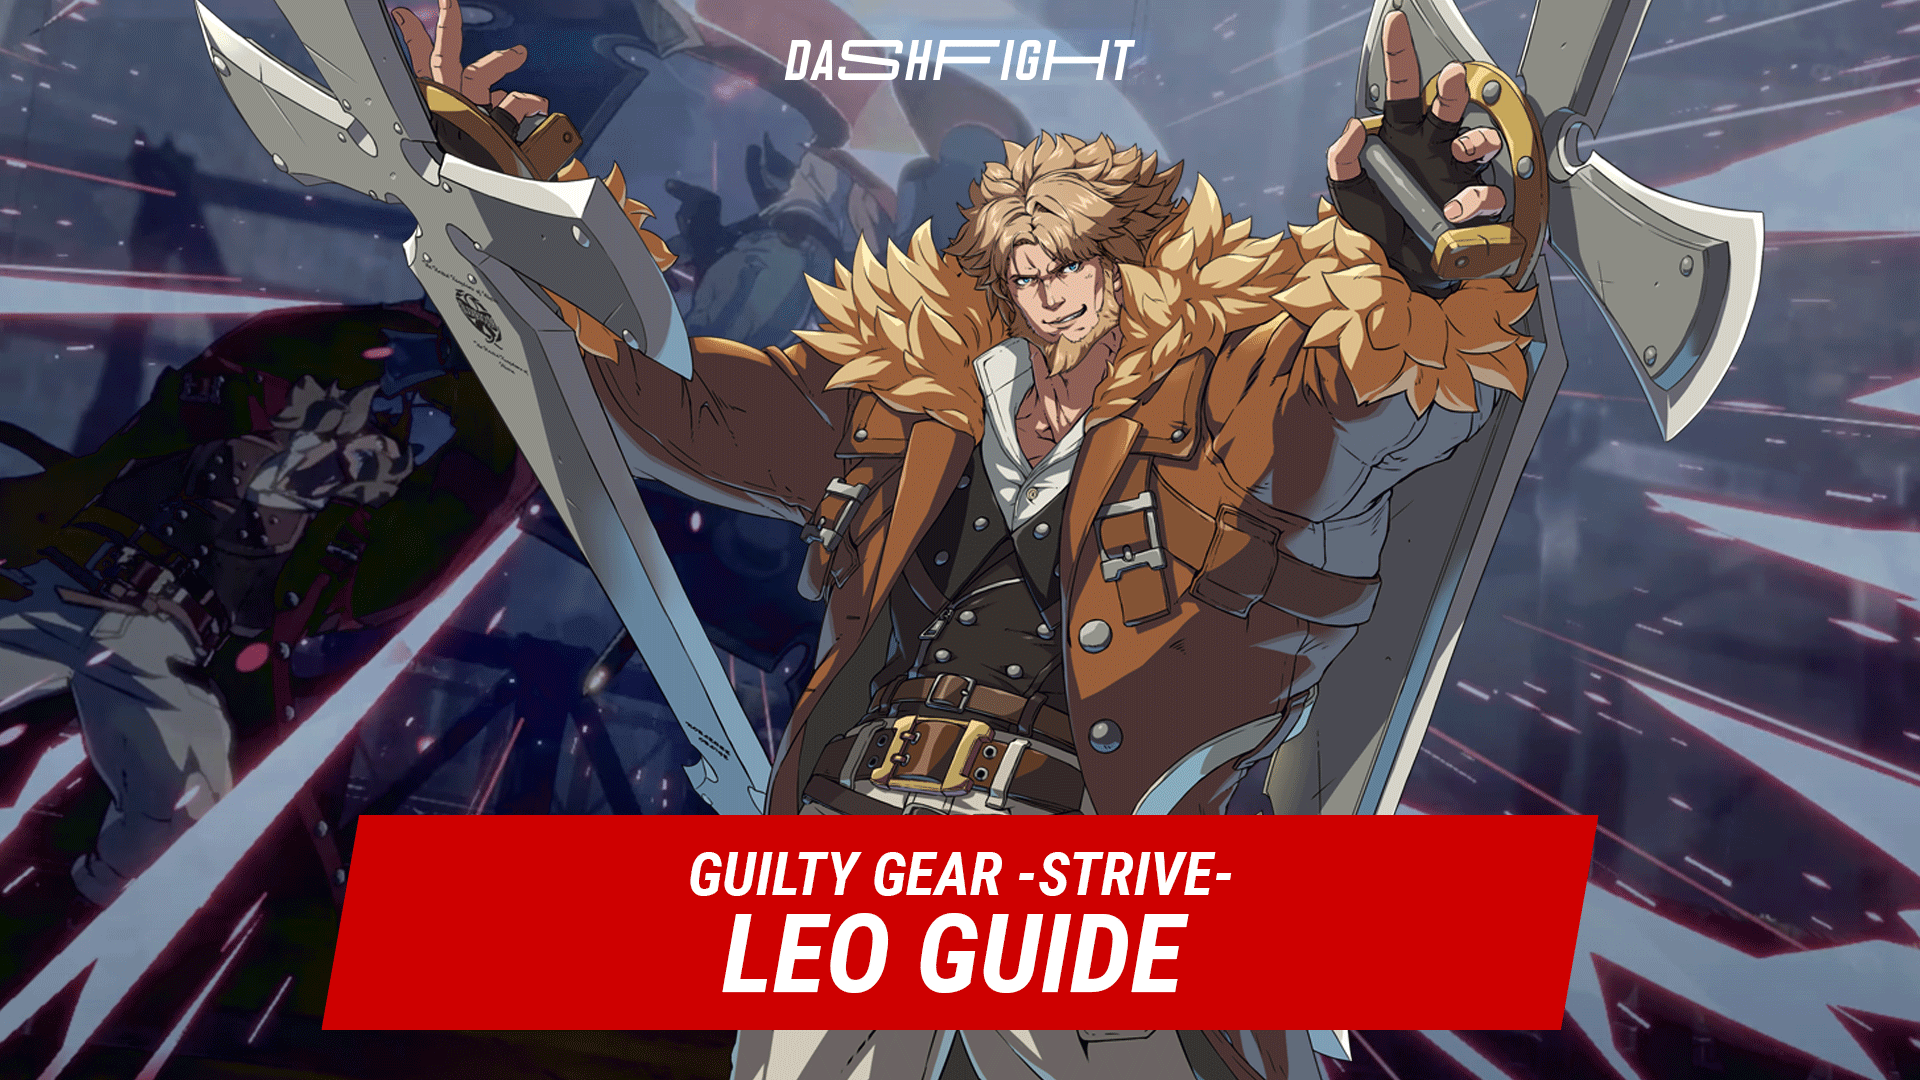 Leo Guilty Gear -Strive- Guide